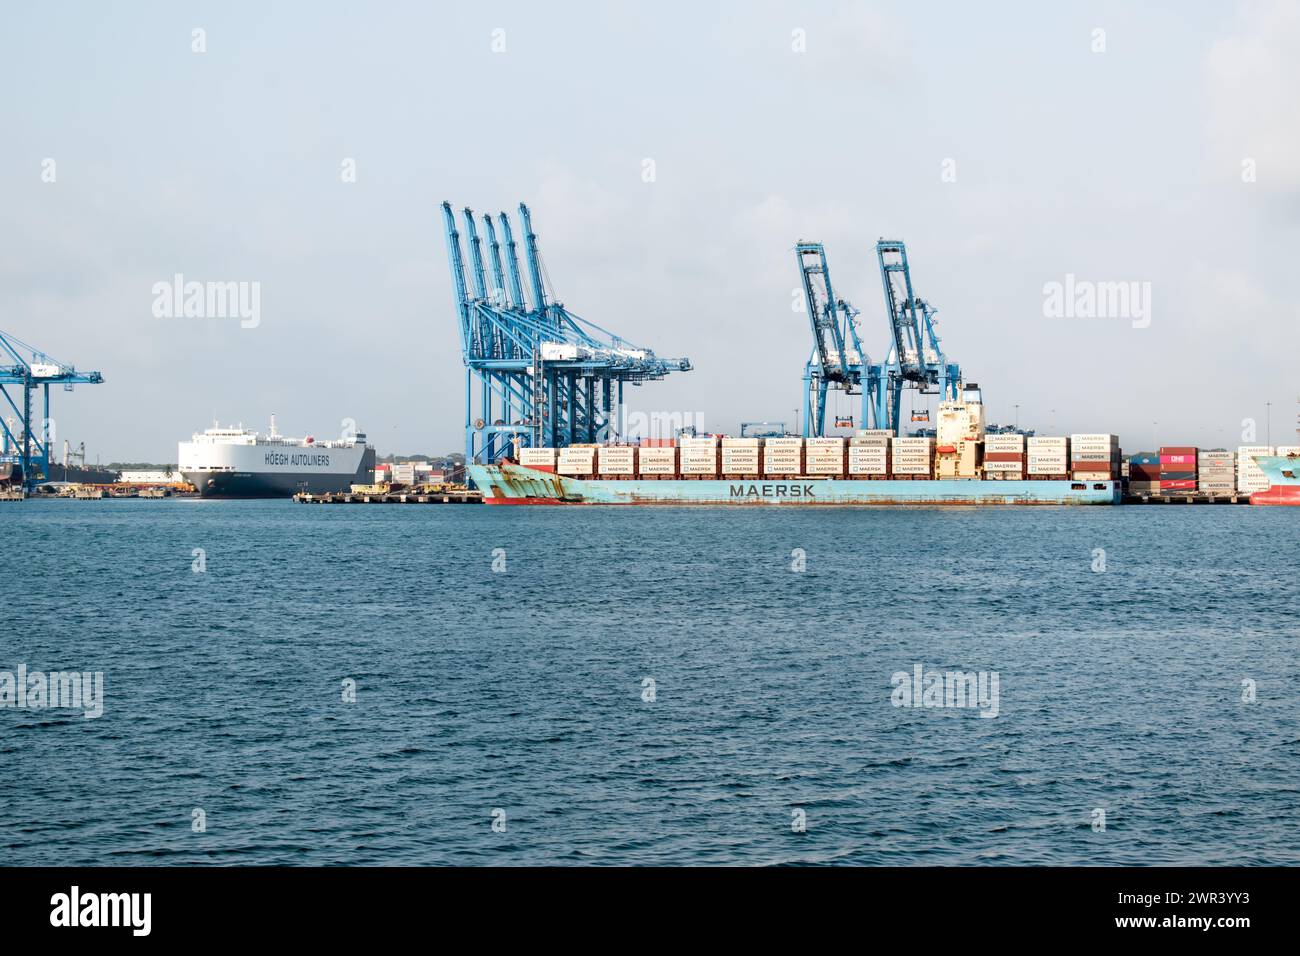 Colon è un punto cruciale per il commercio marittimo e il trasporto, che funge da porta d'accesso al Canale di Panama e collega l'Oceano Atlantico e il Pacifico Foto Stock